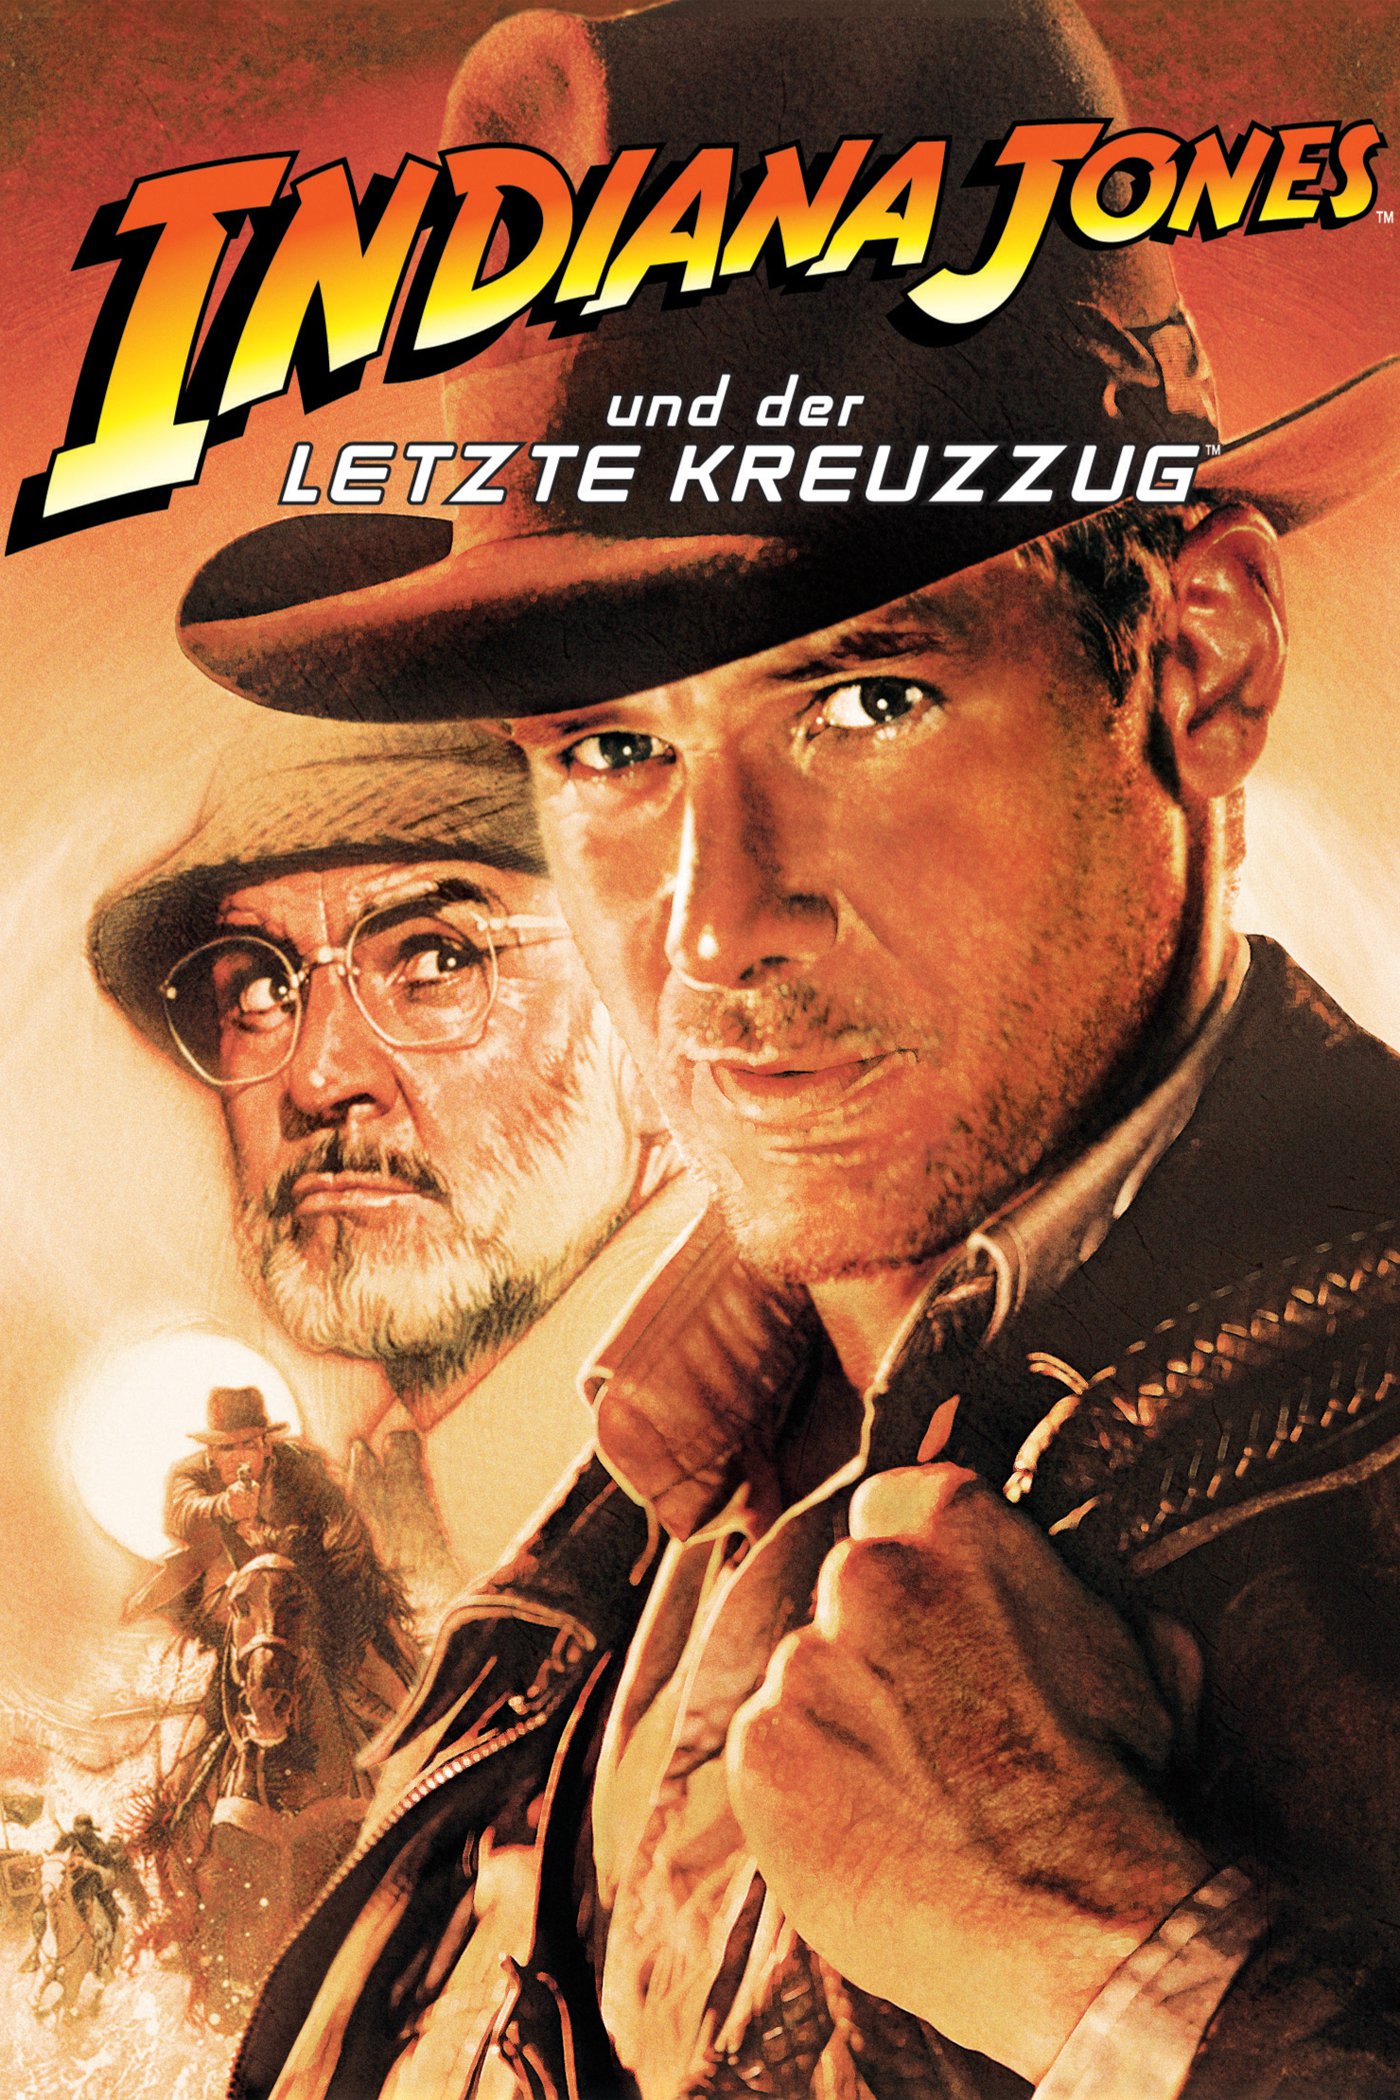 Plakat von "Indiana Jones und der letzte Kreuzzug"